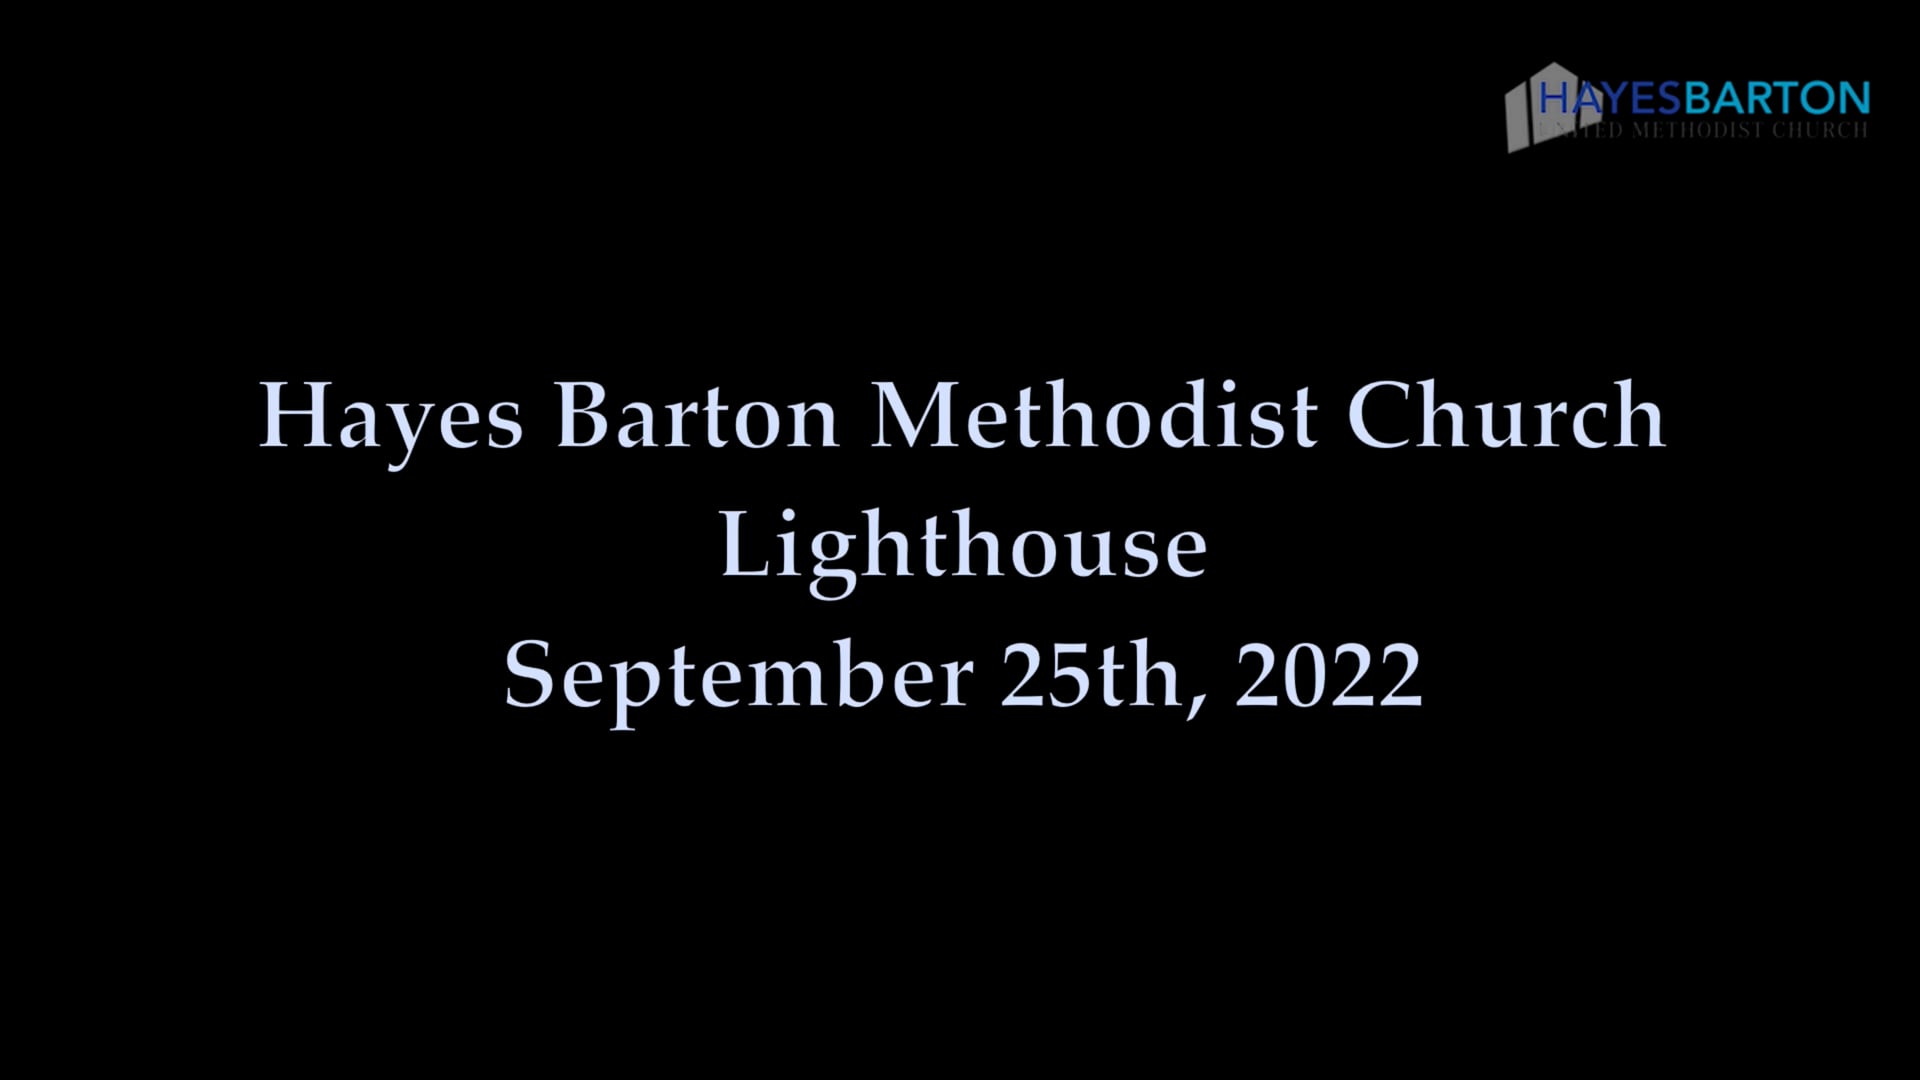 Lighthouse - September 25, 2022